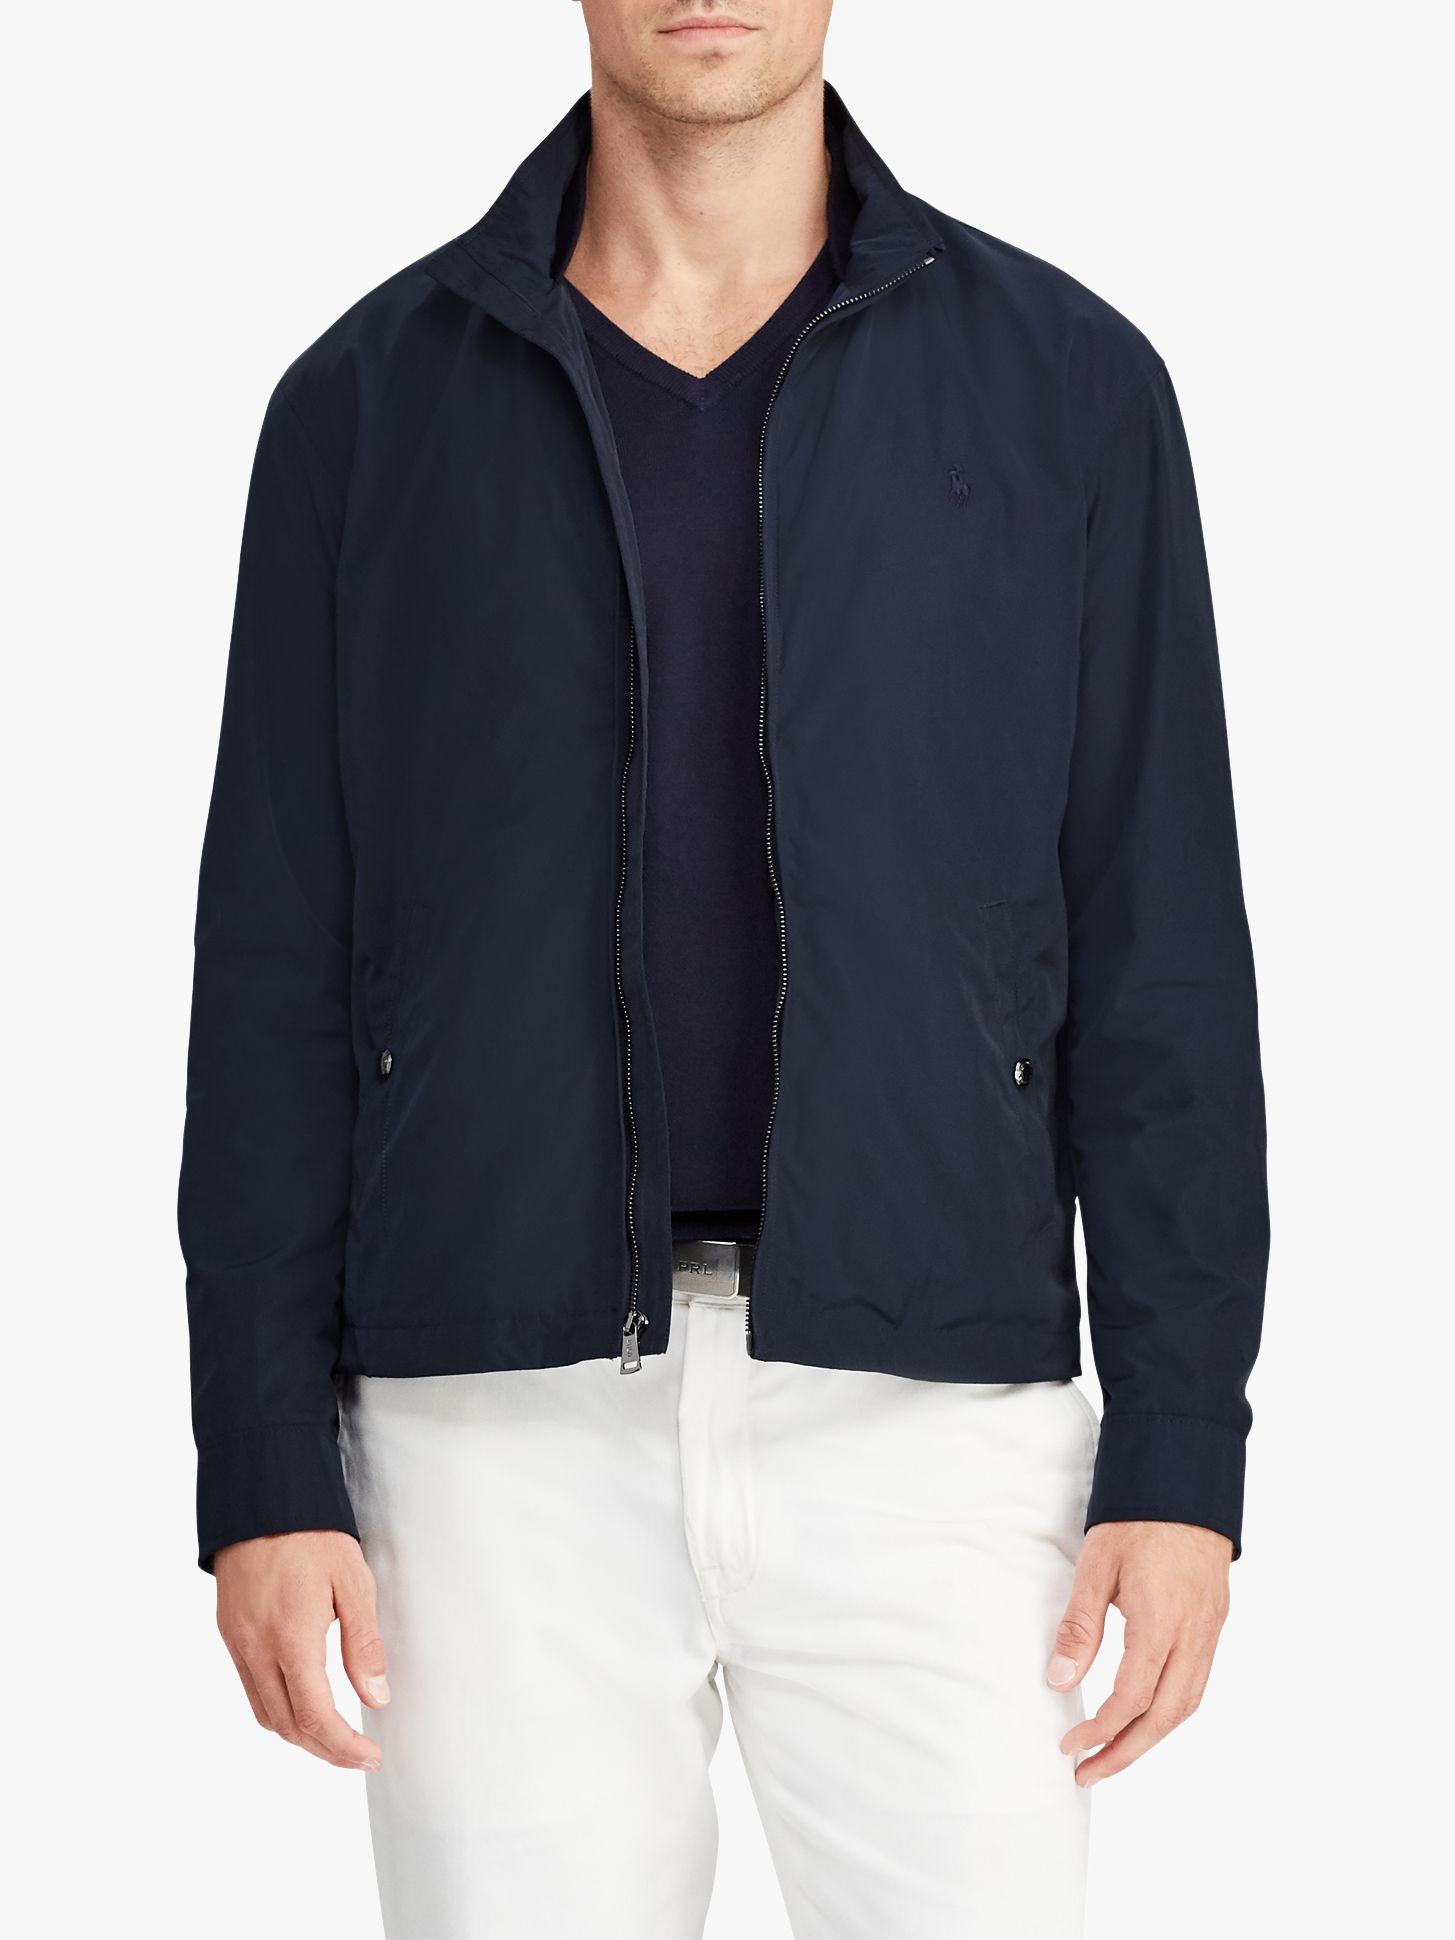 Polo Ralph Lauren Surrey Jacket 